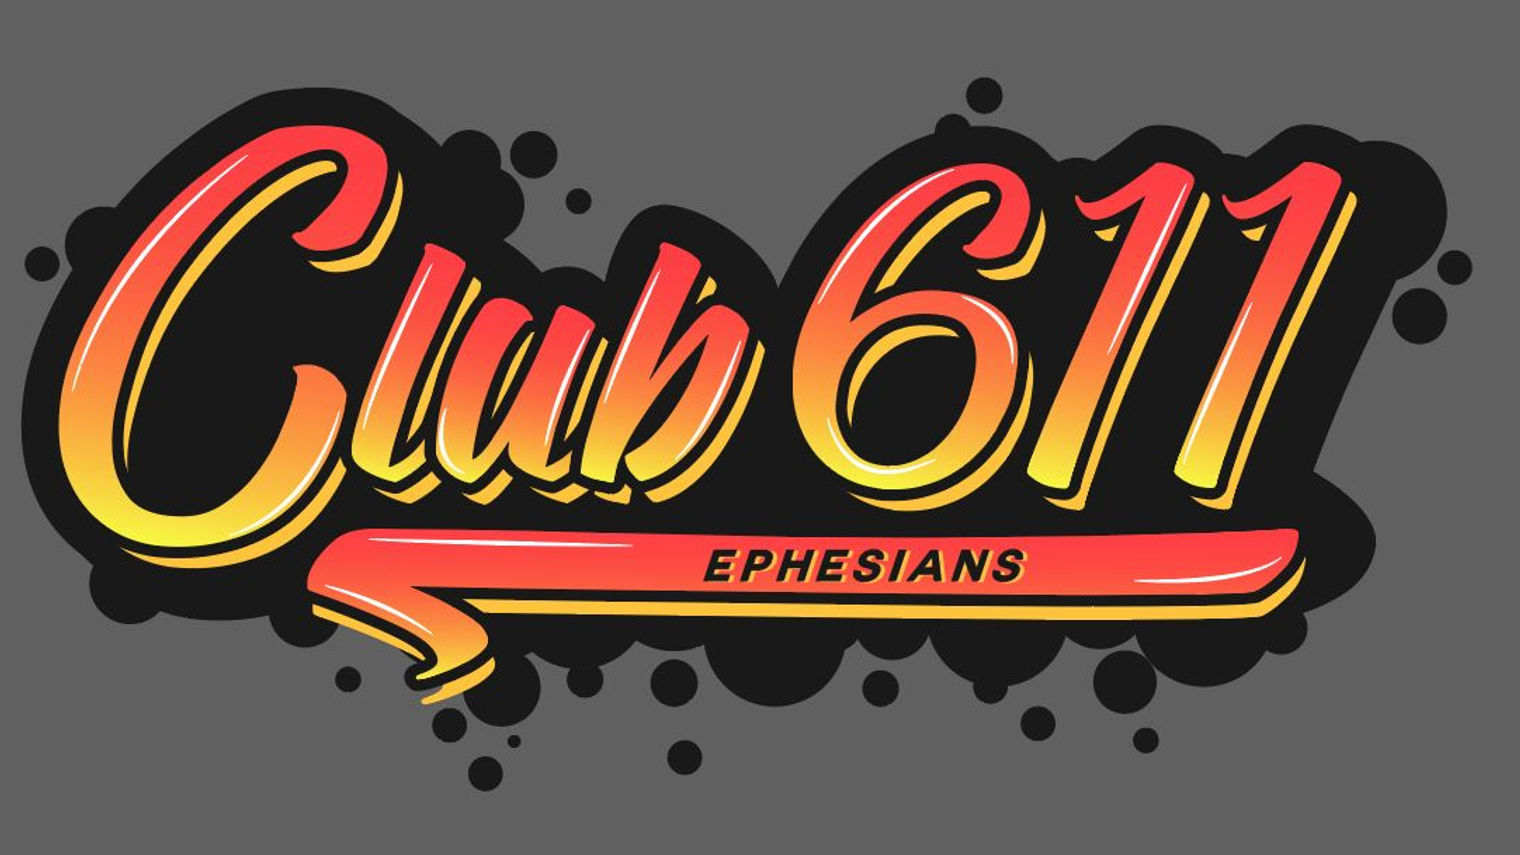 Club 611 Videos